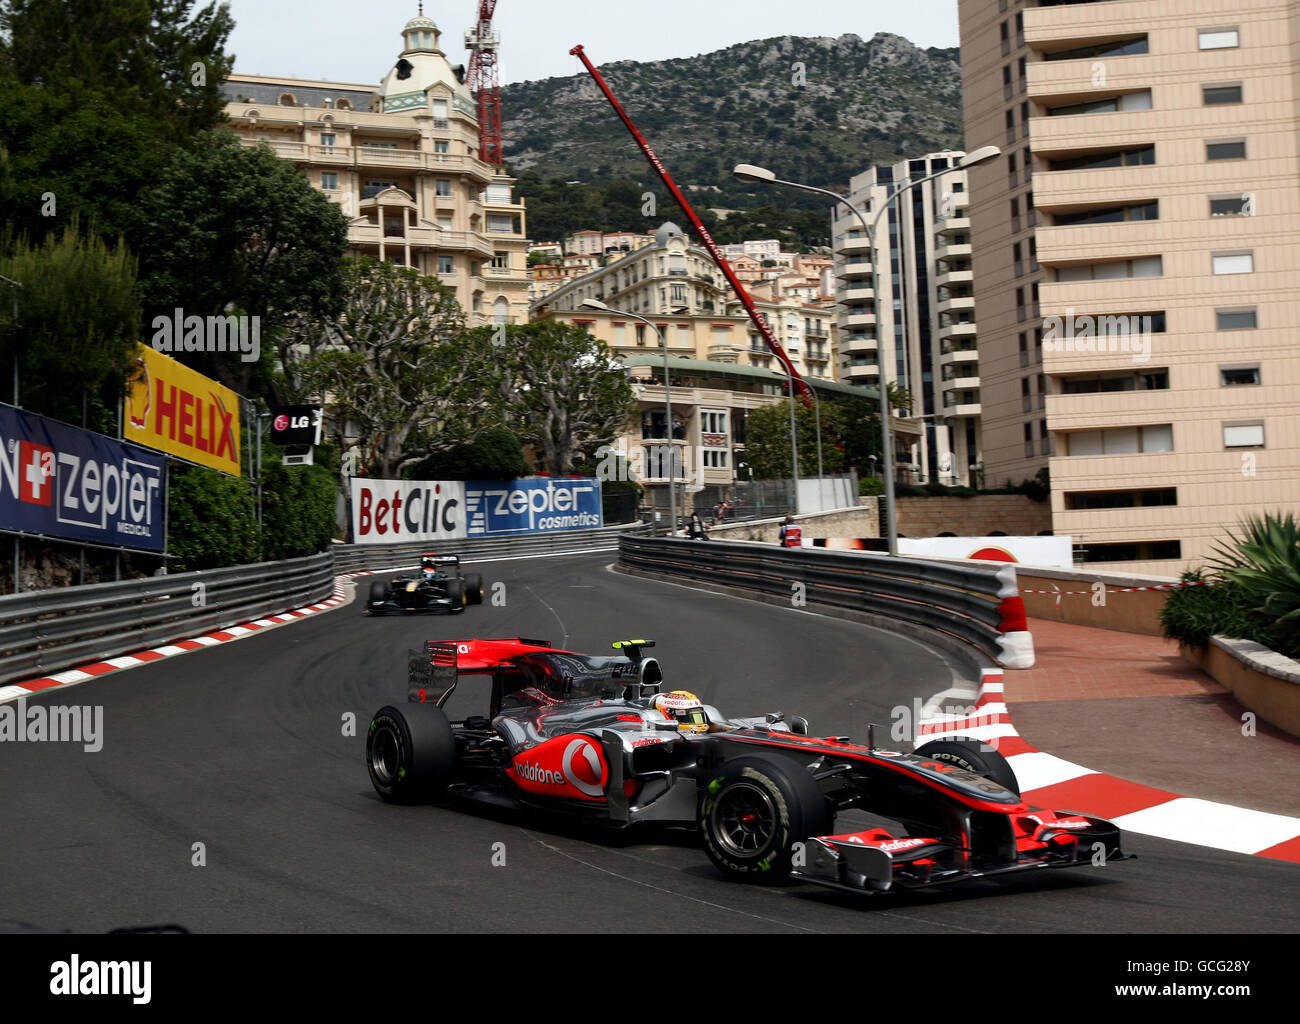 Lewis Hamilton, pilote McLaren, lors de la troisième pratique au circuit de Monaco, Monte Carlo. Banque D'Images